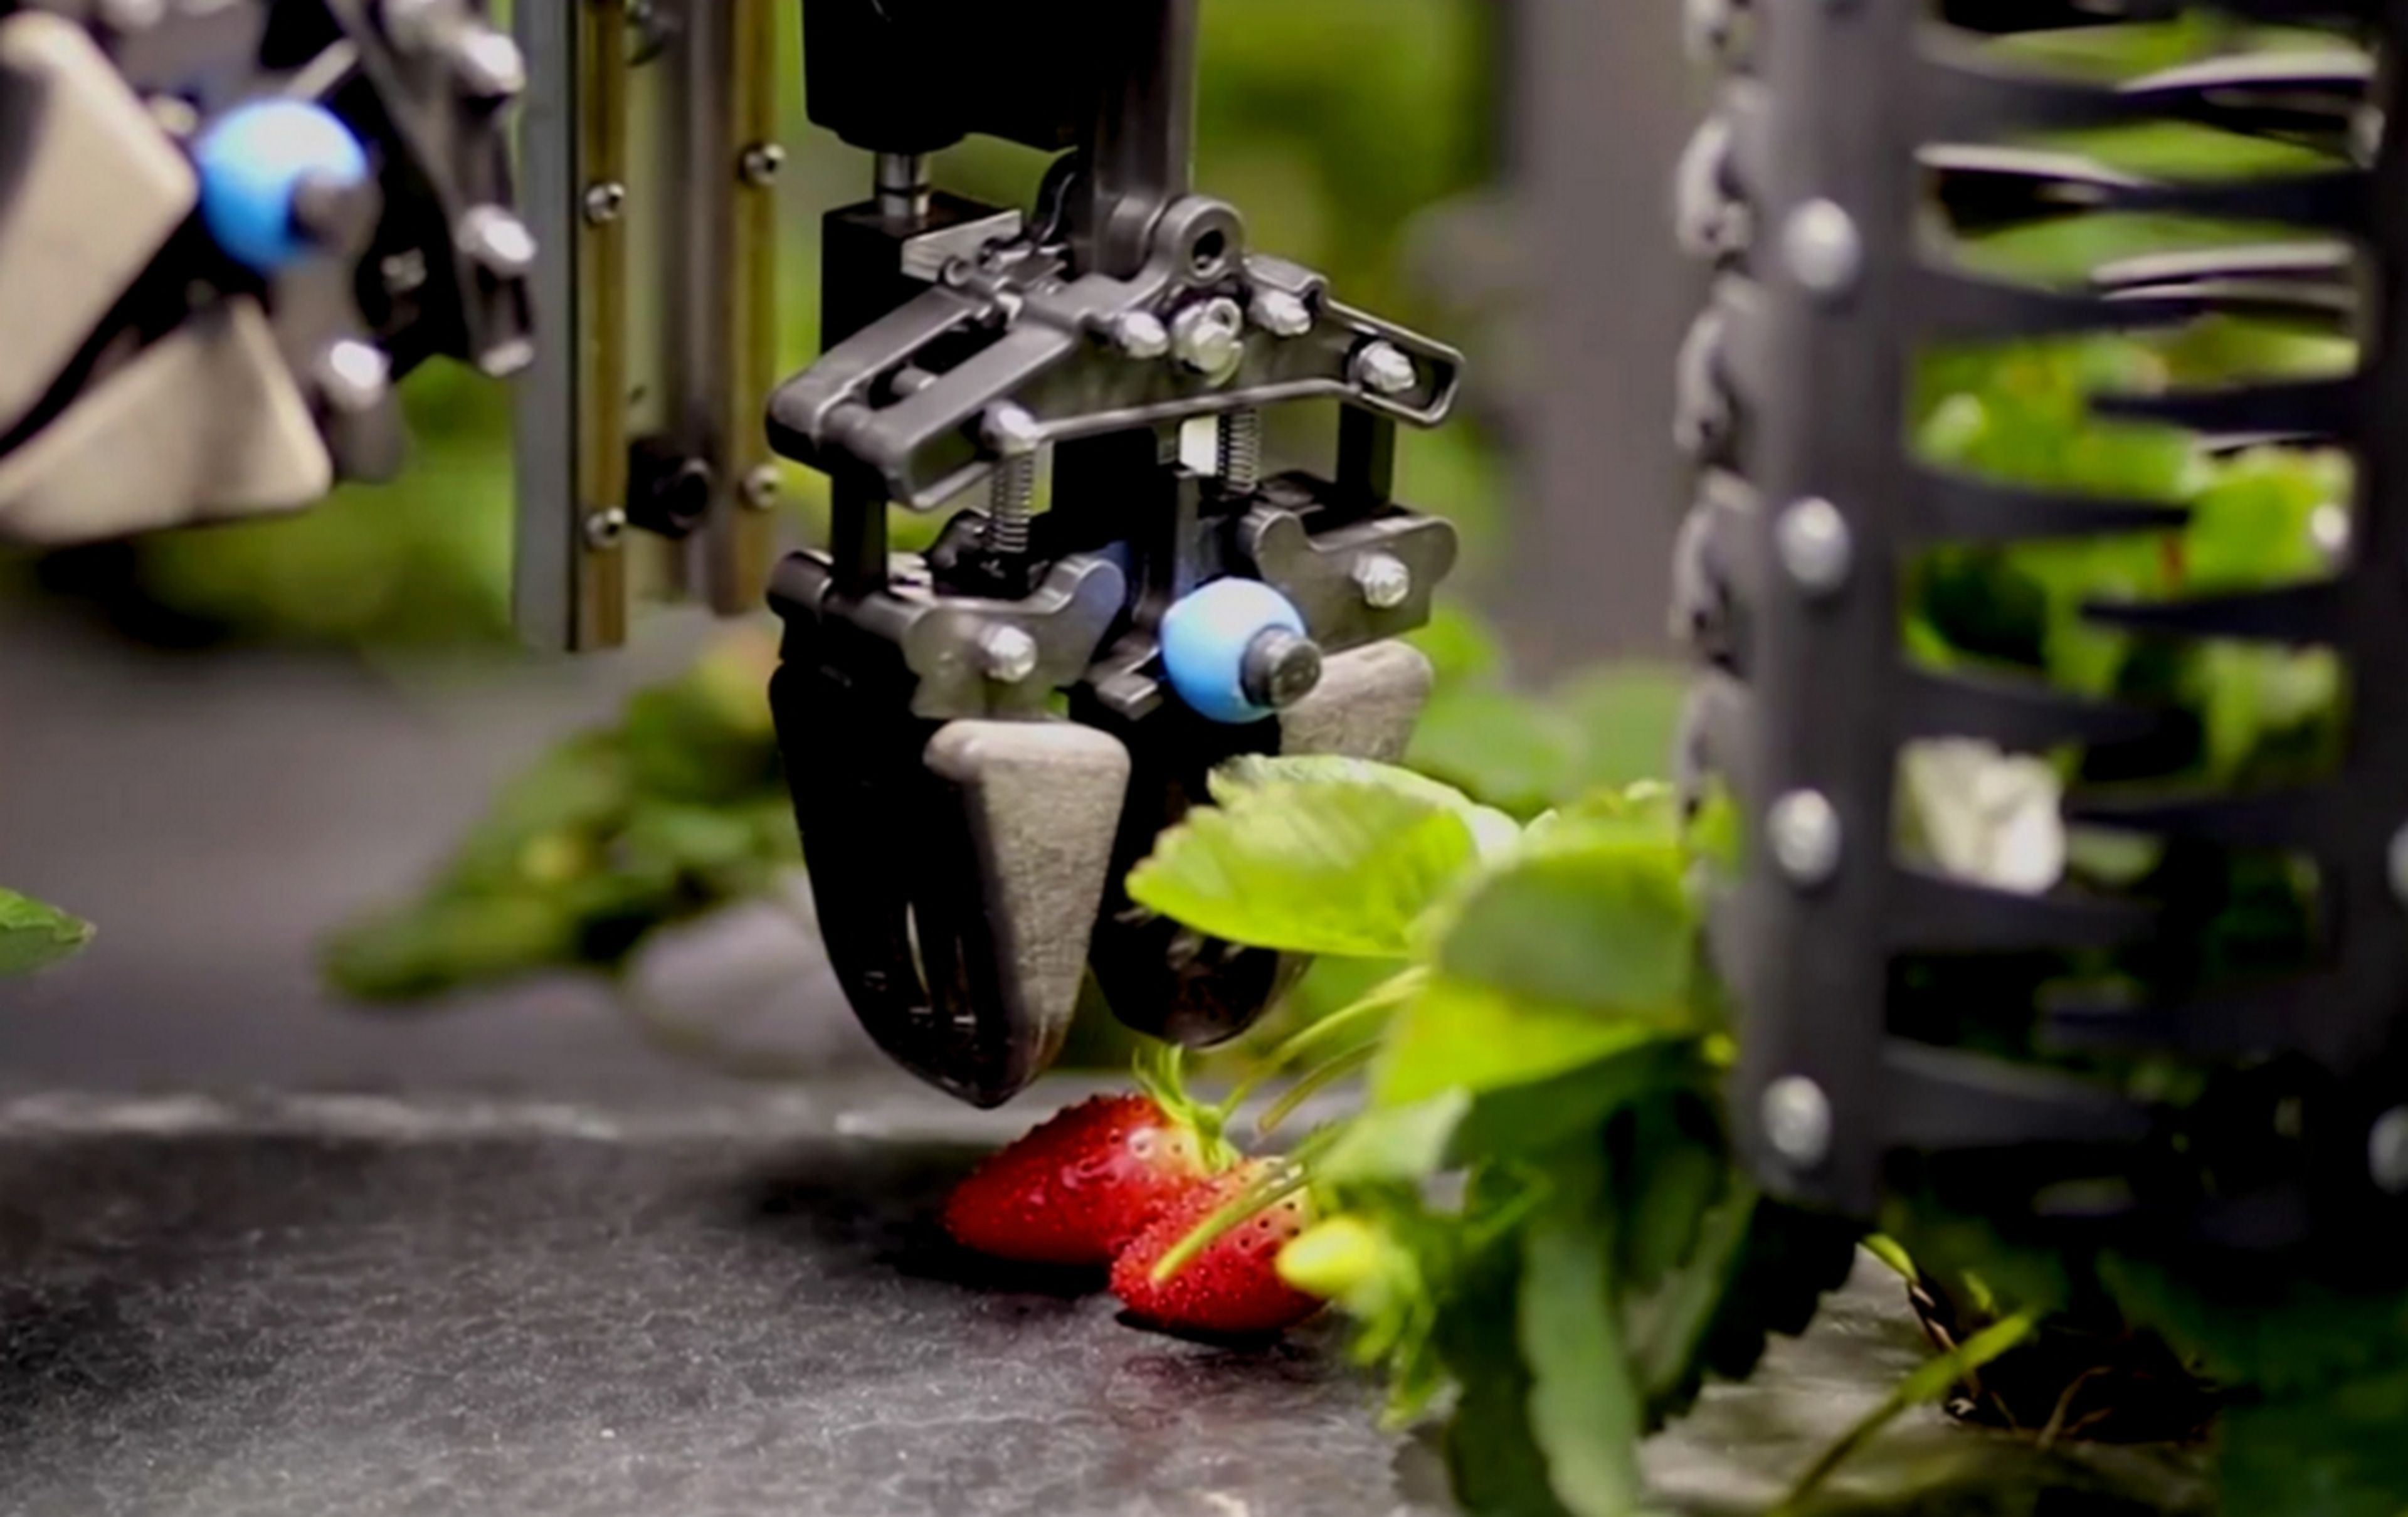 Este robot recolector recoge las mismas fresas que 6 trabajadores humanos